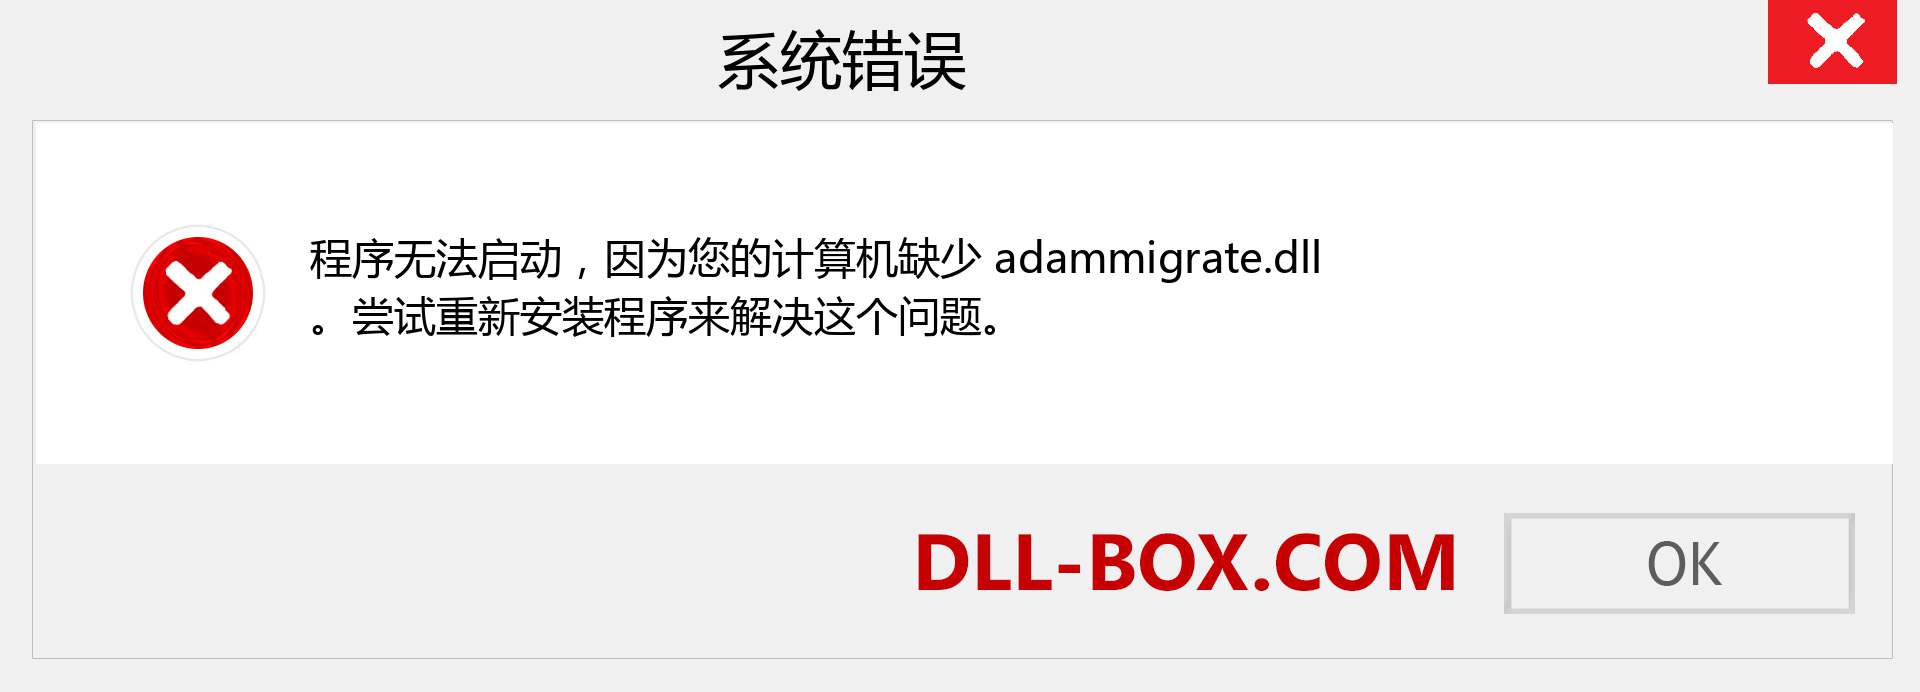 adammigrate.dll 文件丢失？。 适用于 Windows 7、8、10 的下载 - 修复 Windows、照片、图像上的 adammigrate dll 丢失错误